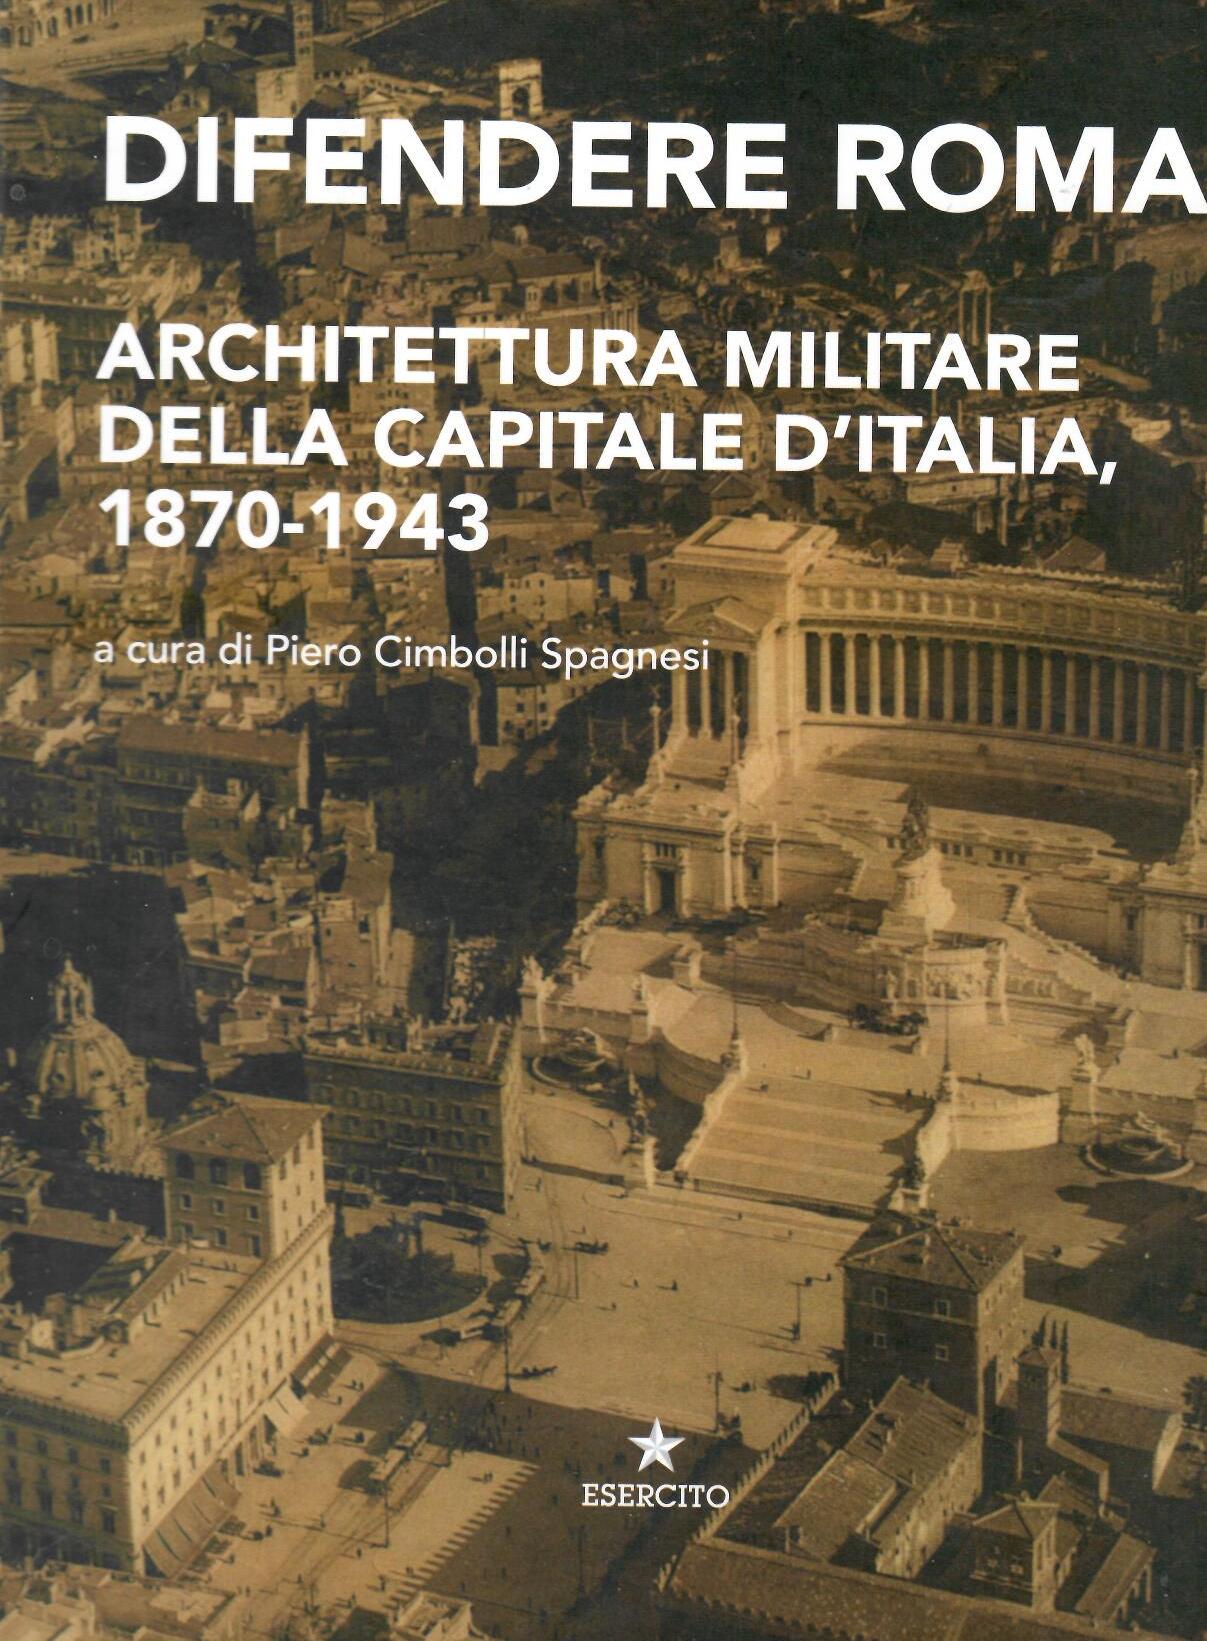 Difendere Roma. Architettura militare della capitale d’italia 1870-1943